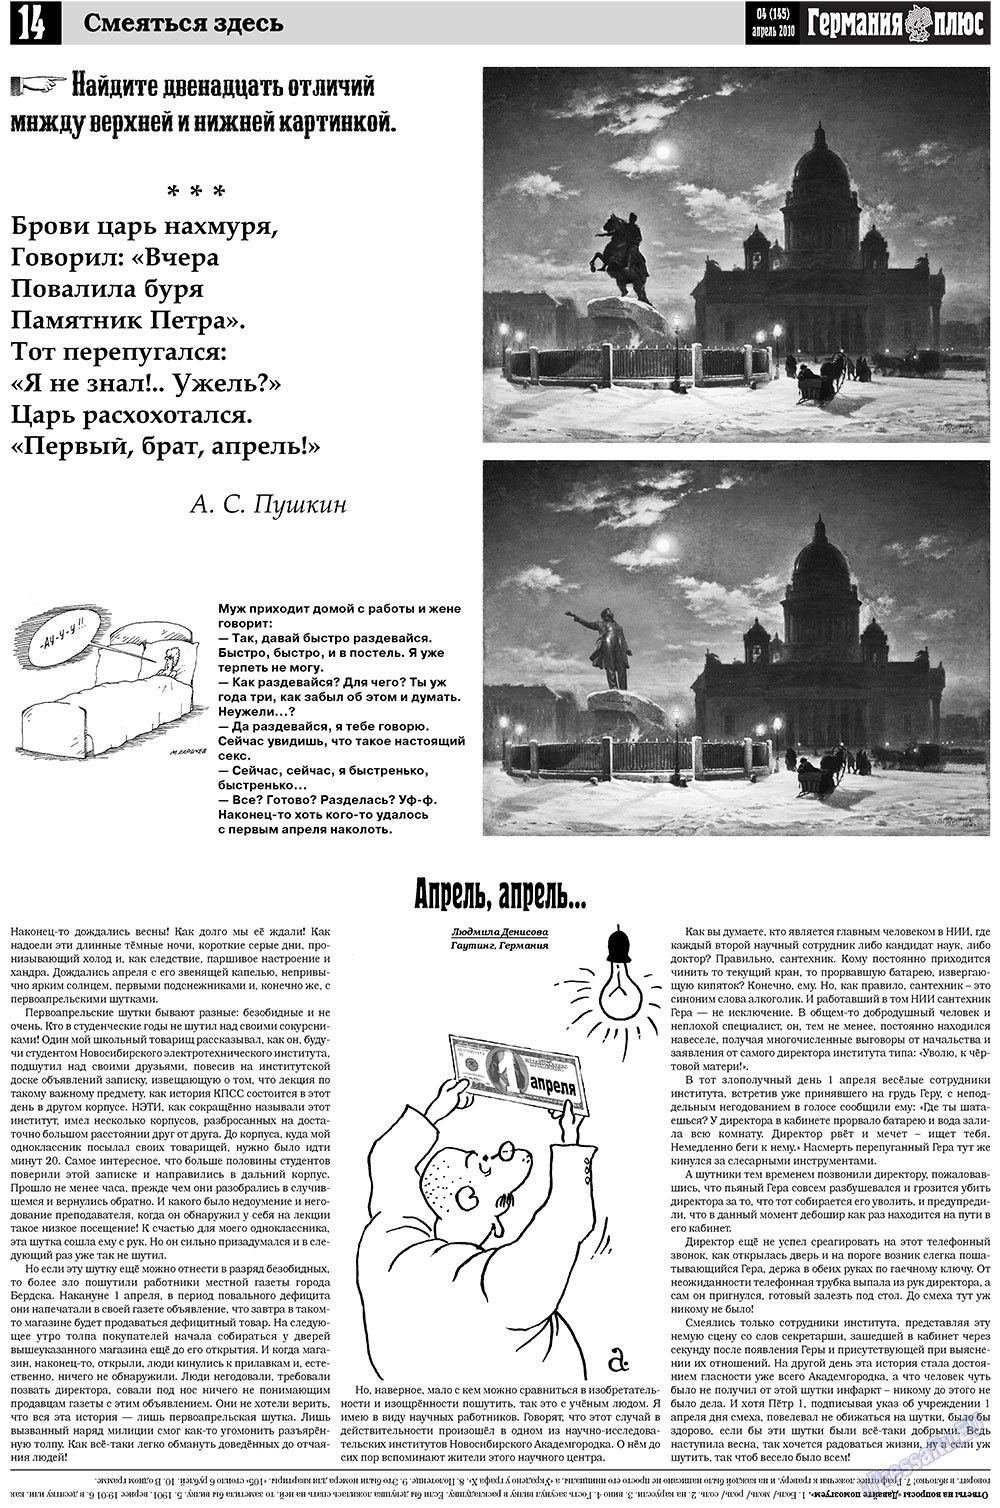 Германия плюс, газета. 2010 №4 стр.14